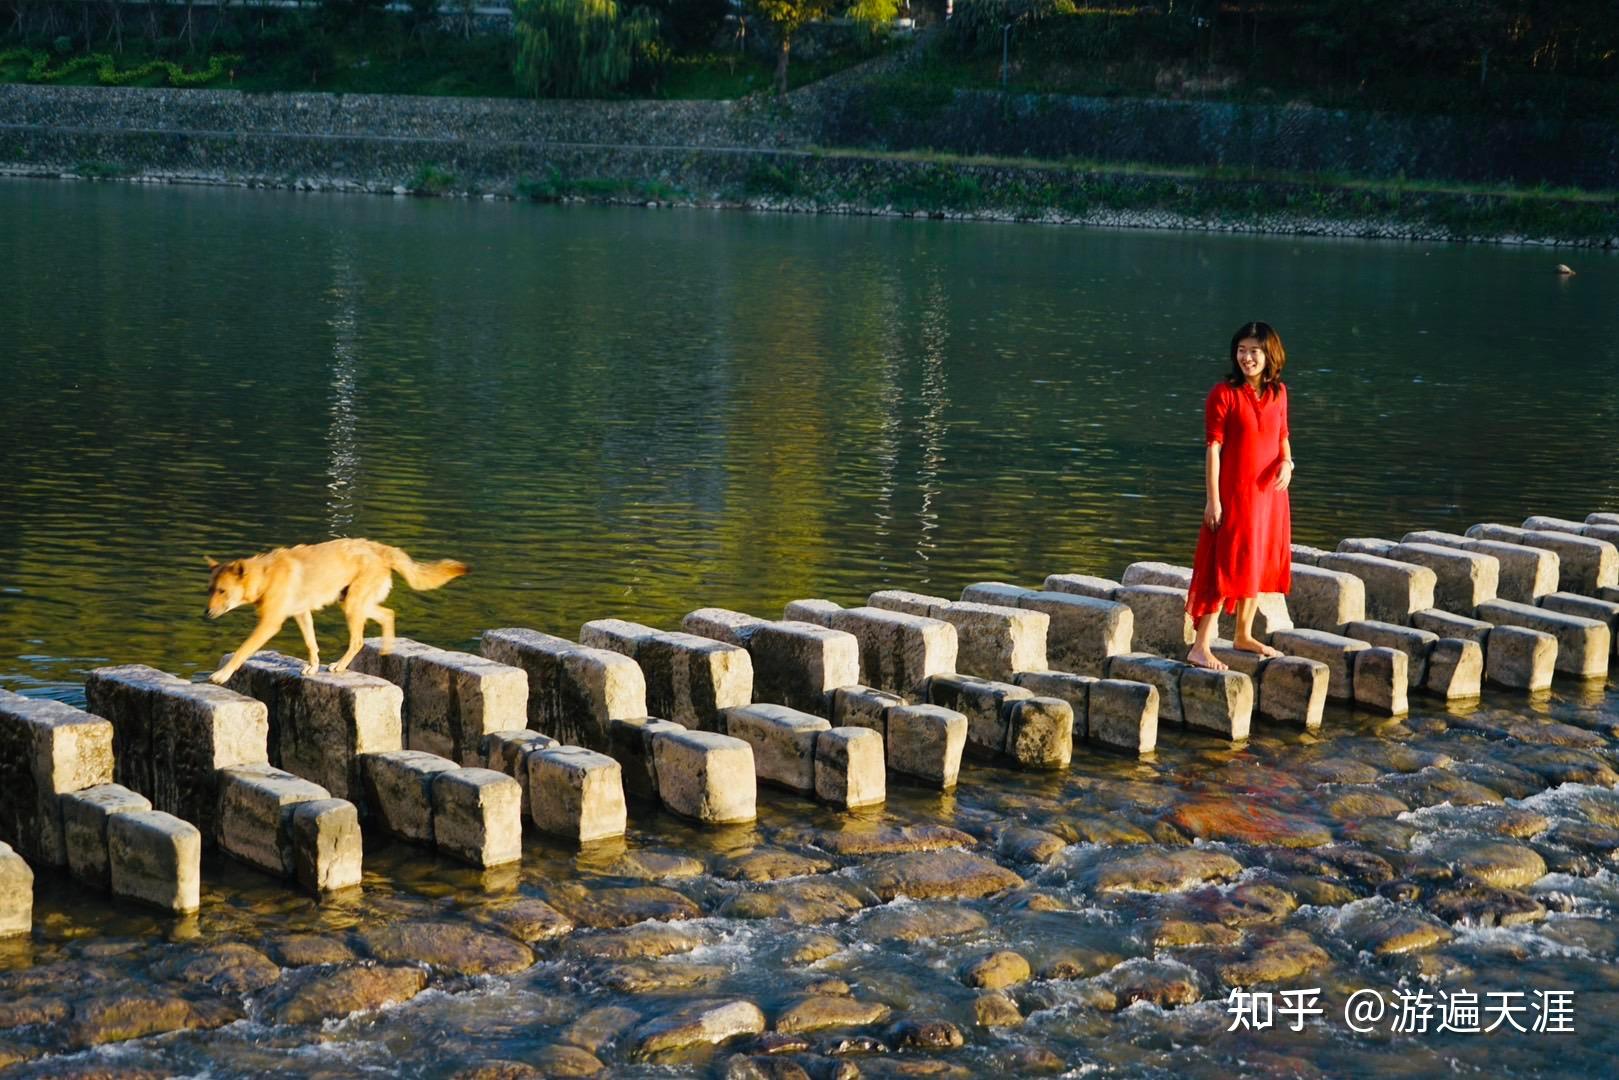 分享一些云南旅拍婚纱照的技巧和拍照攻略_克洛伊全球旅拍